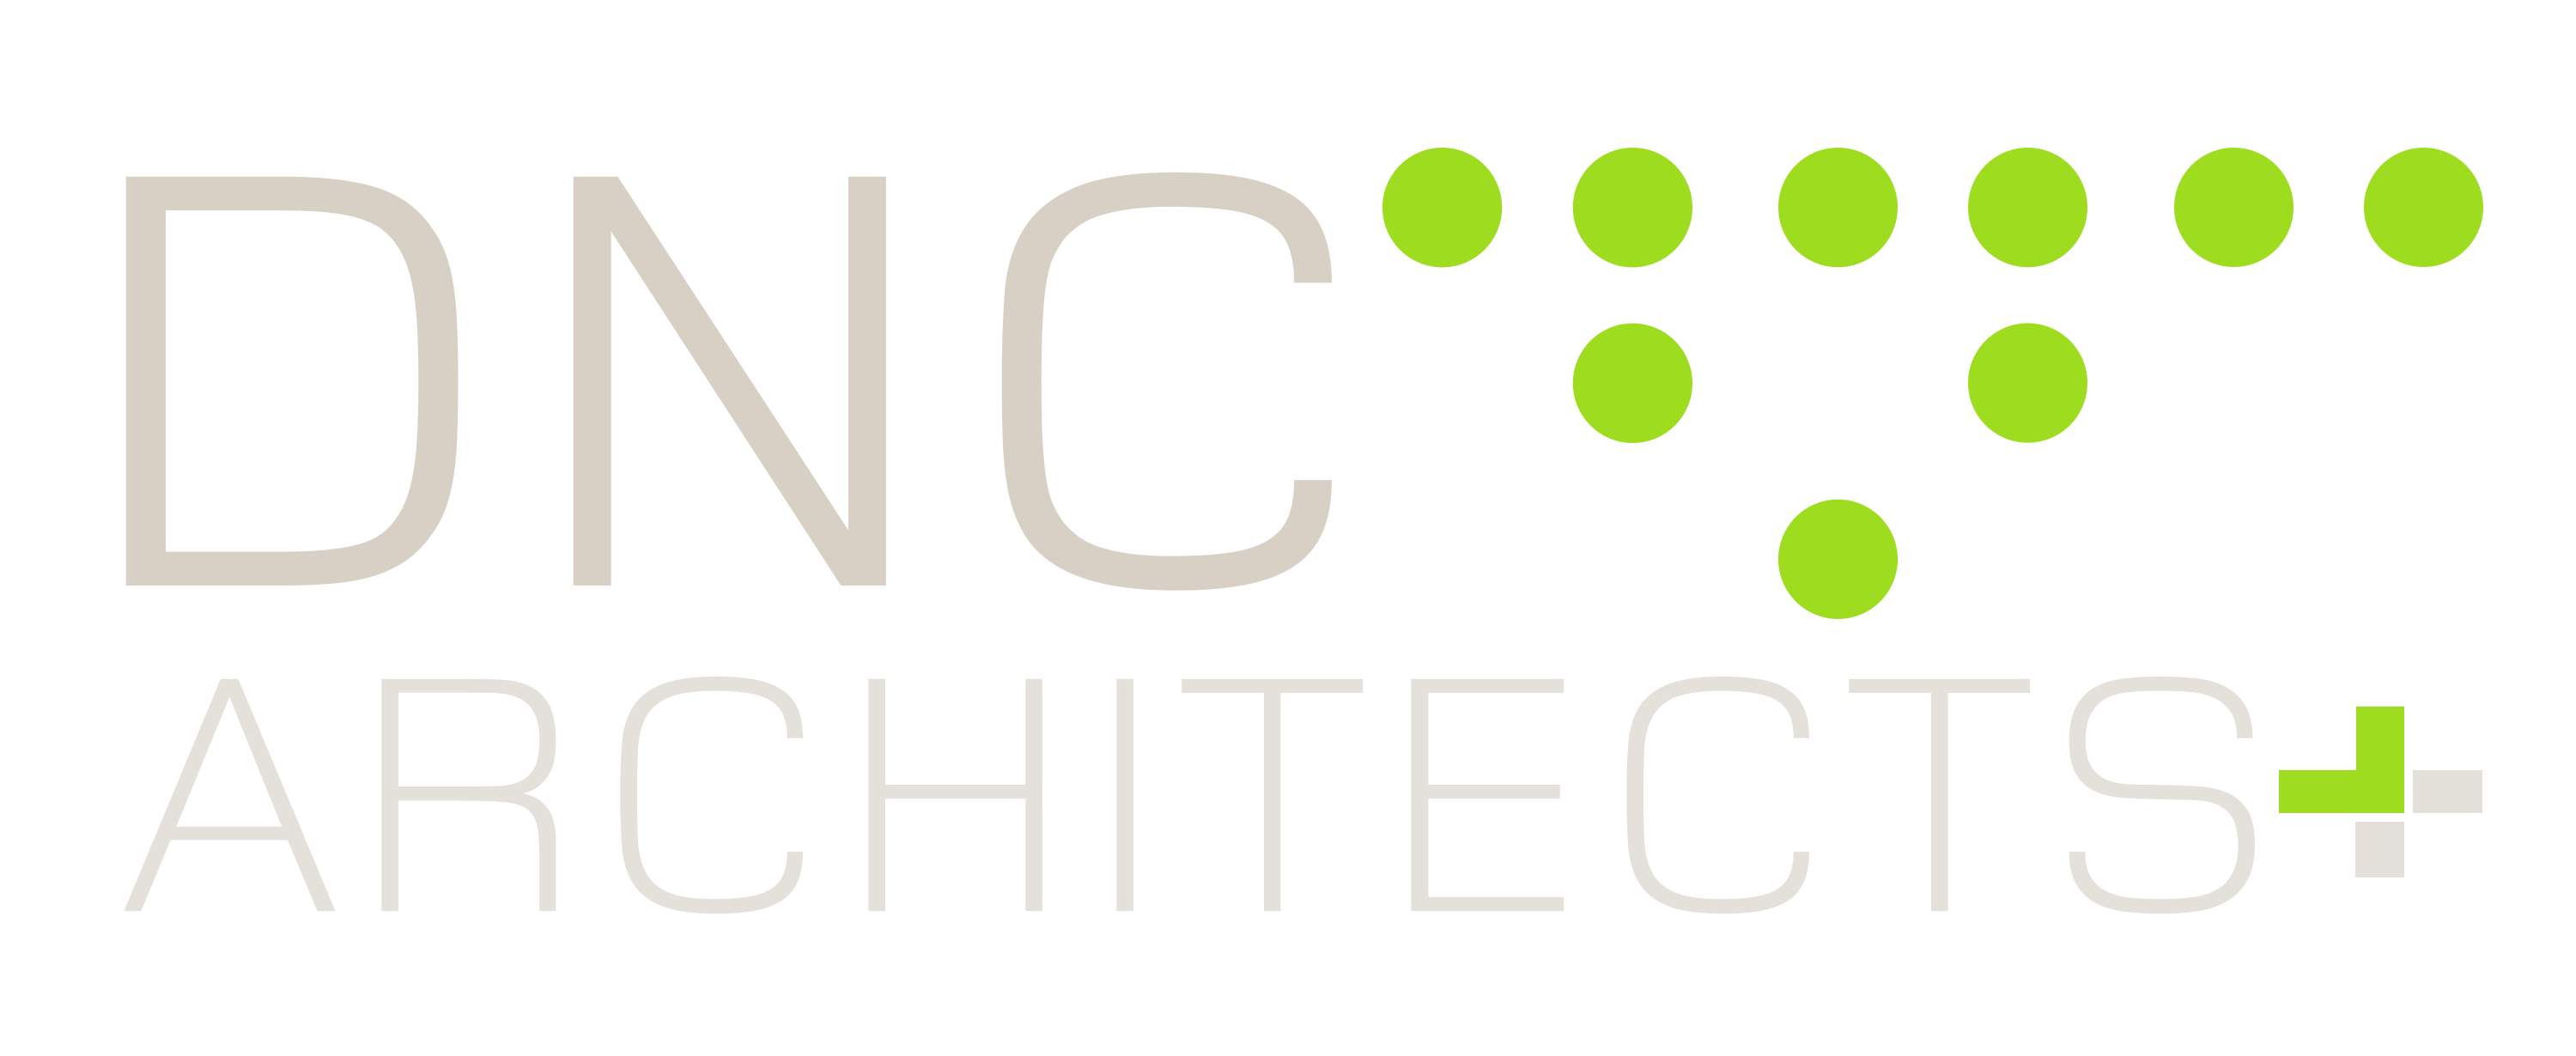 20200519-dnc-logo 2